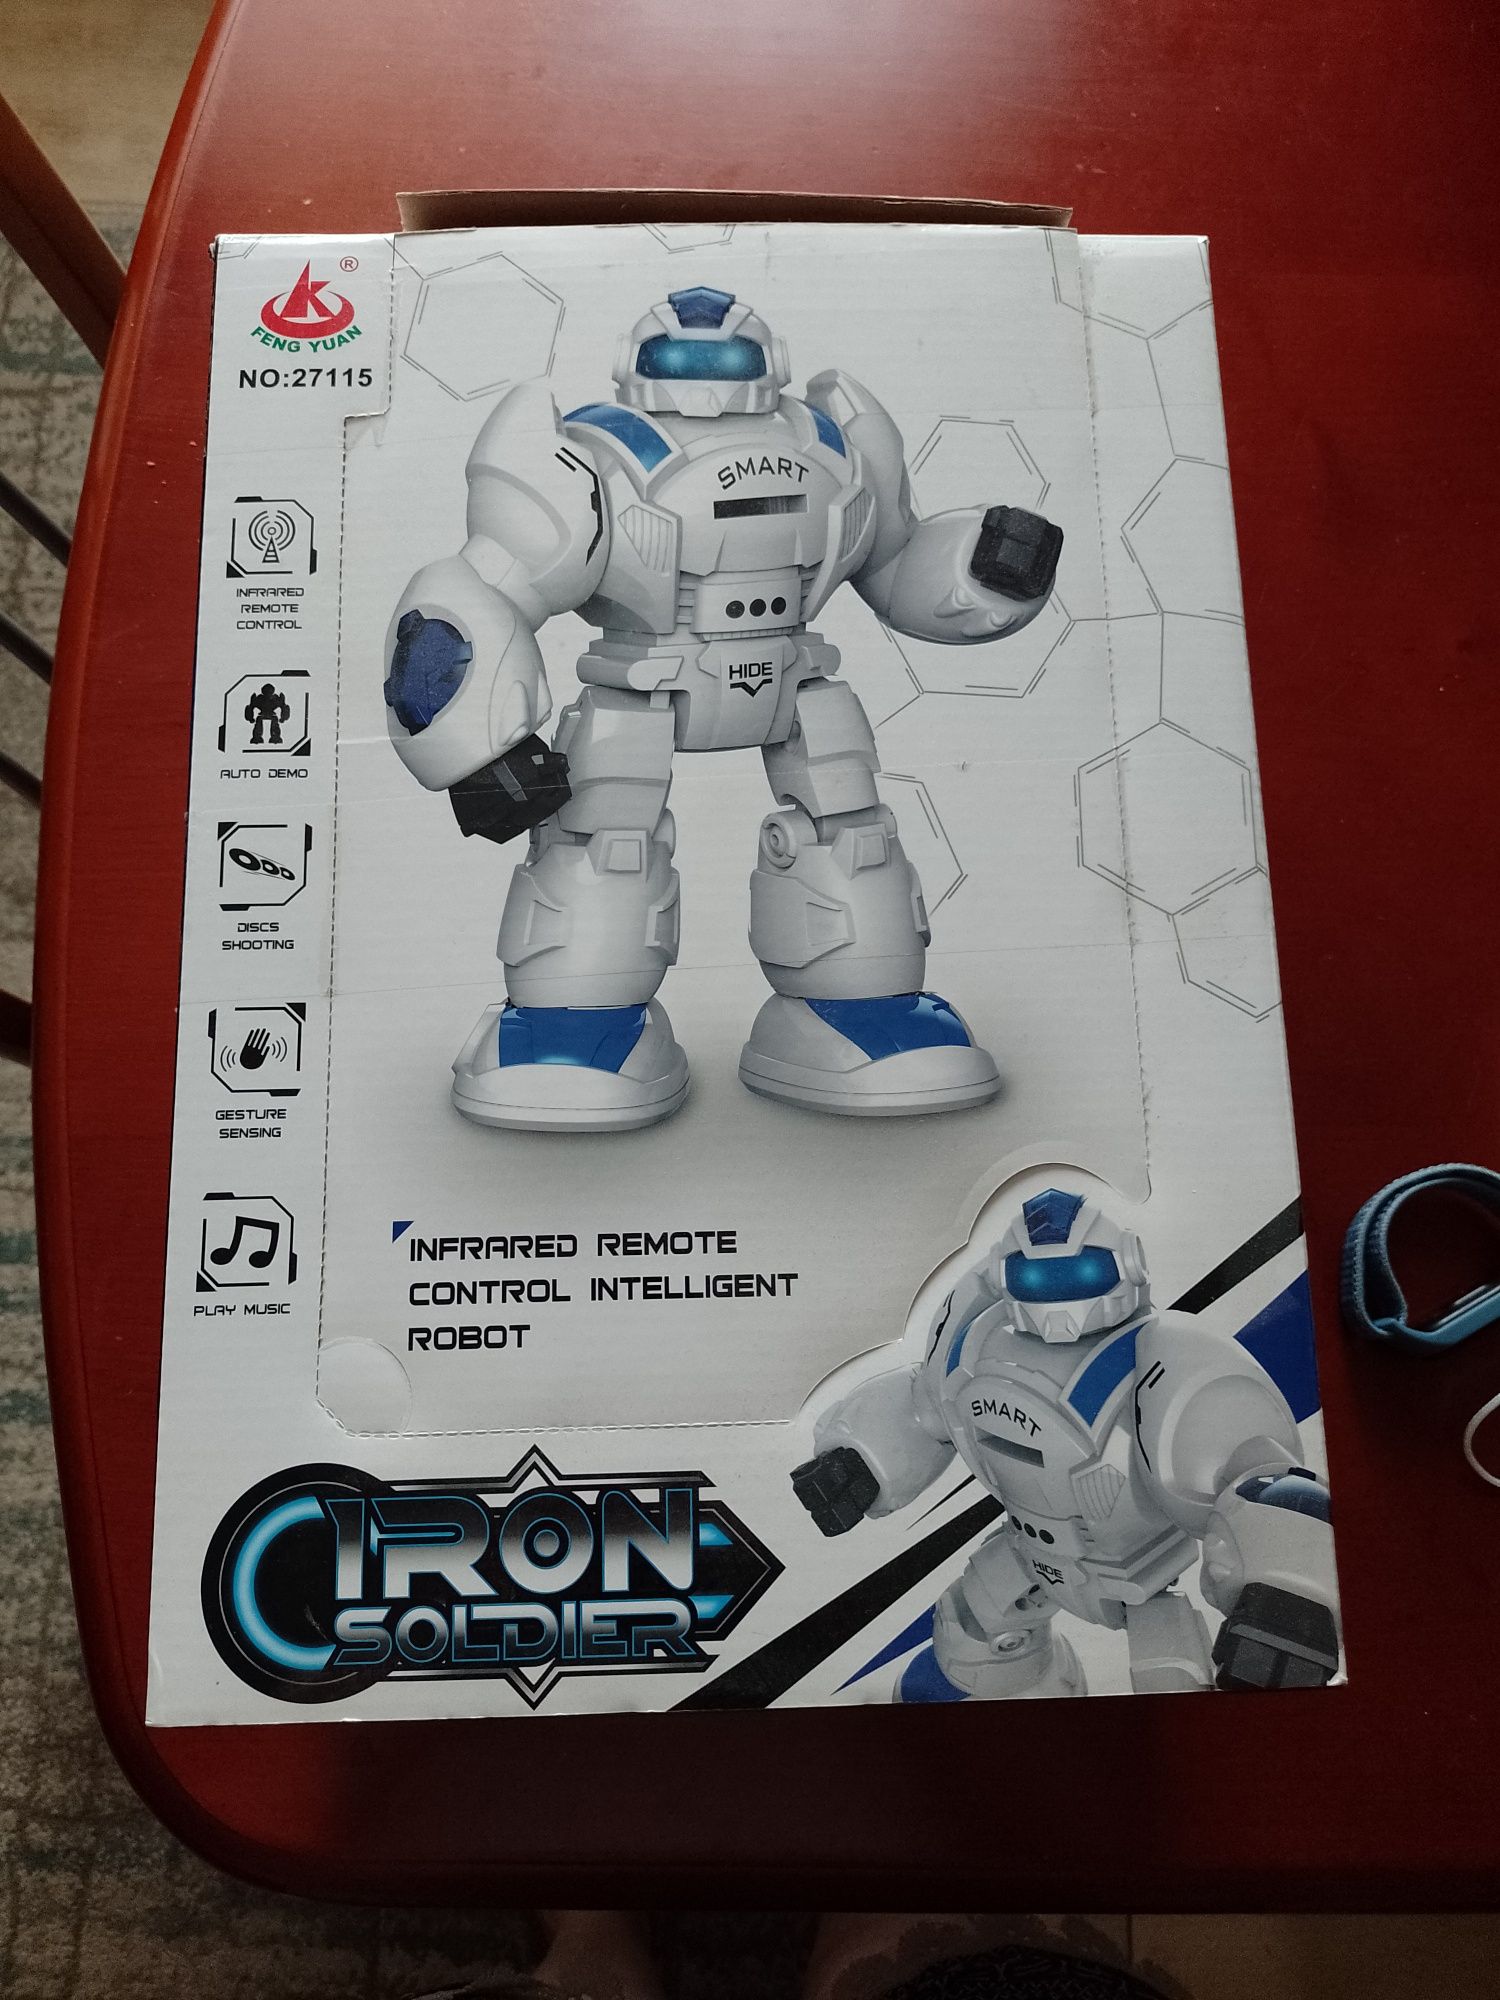 Robot Iron Soldier